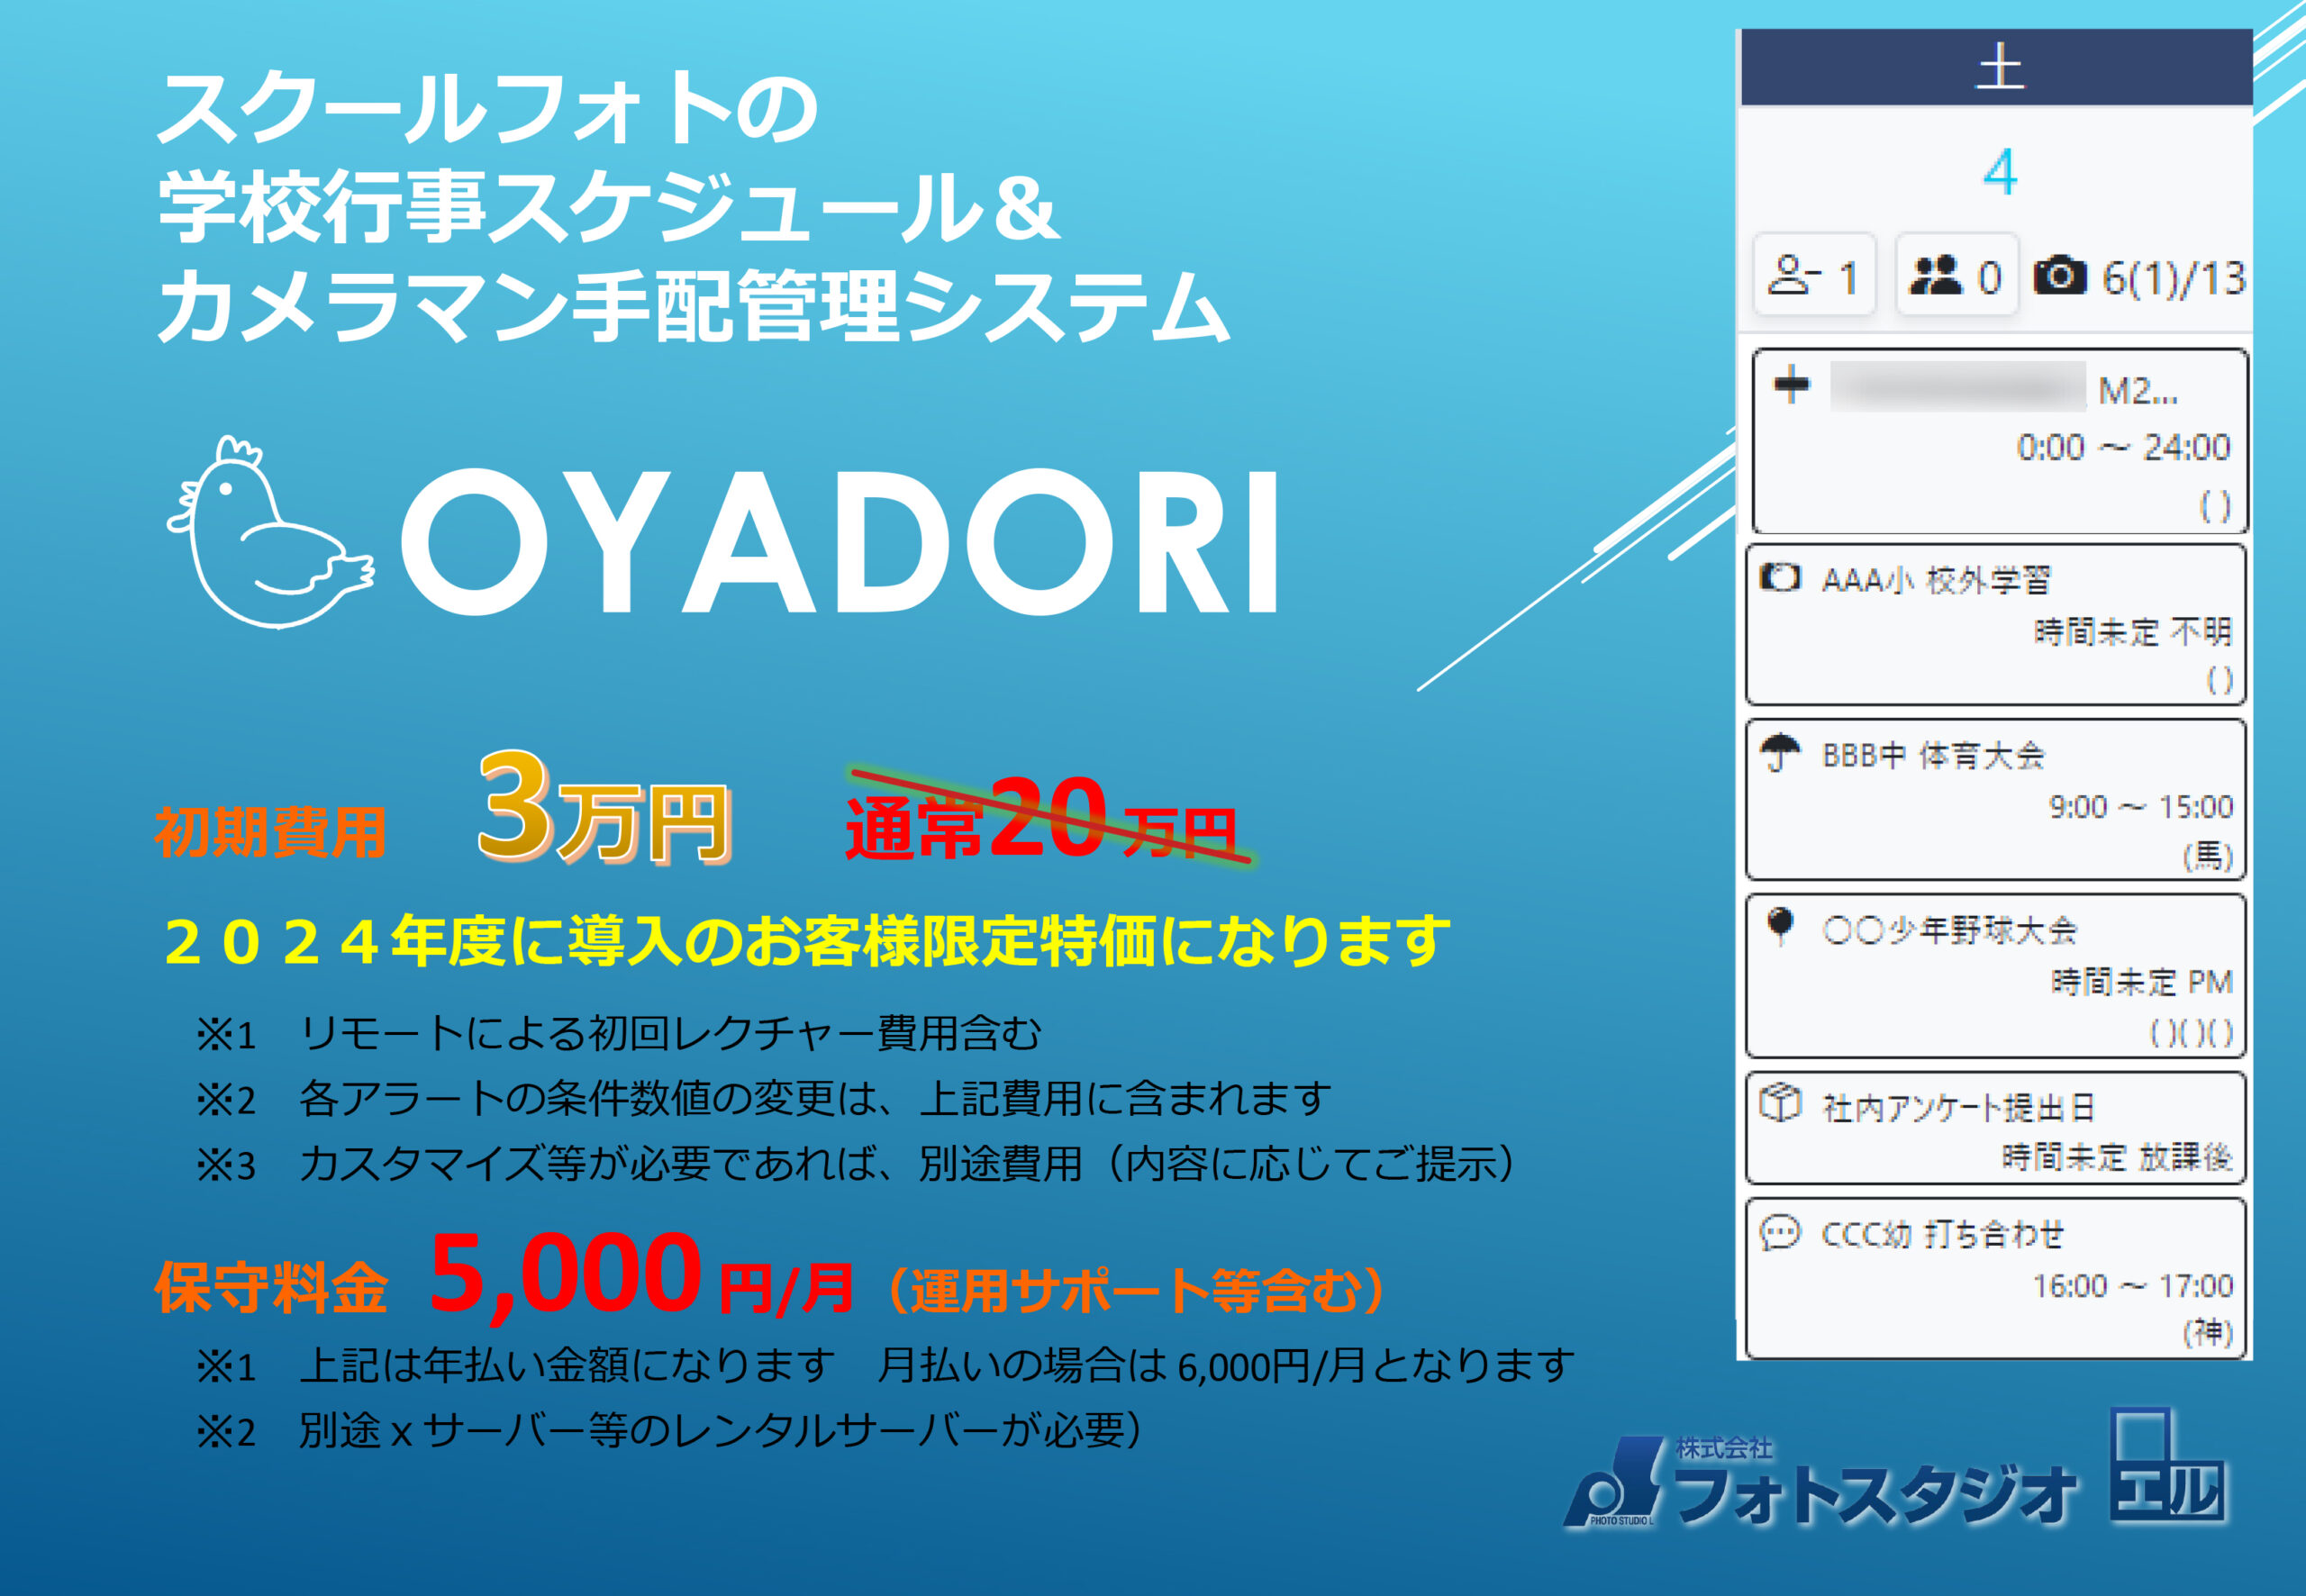 〇スクールフォトのスケジュール進捗管理システム「OYADORI」〇